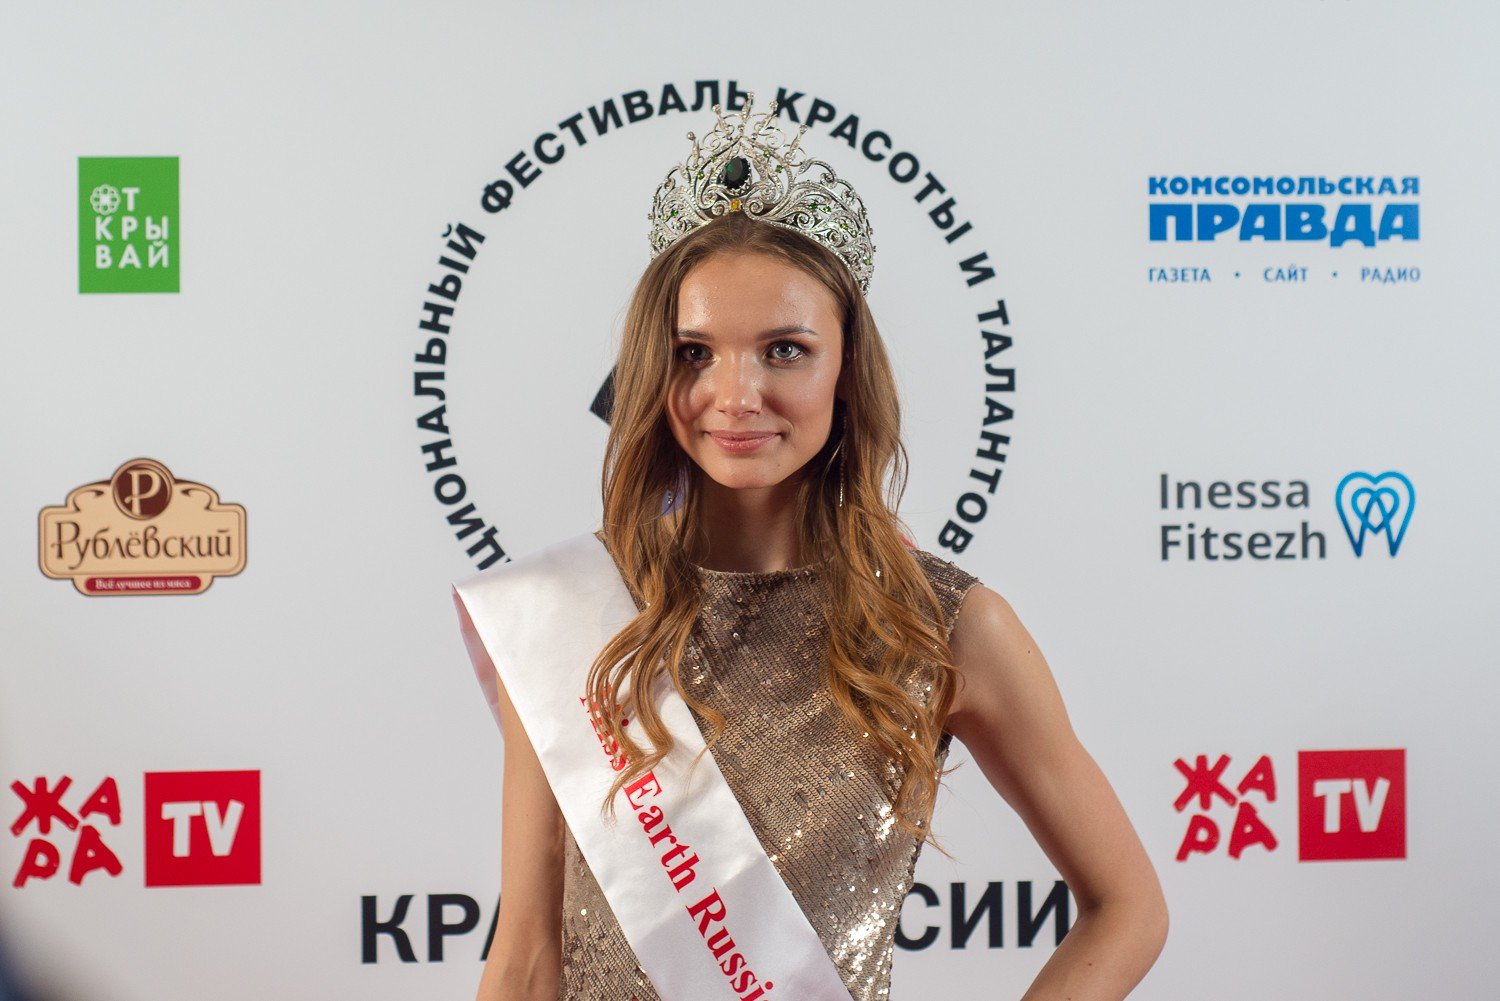 17-летняя победительница конкурса «Краса России» отправится на Miss Earth